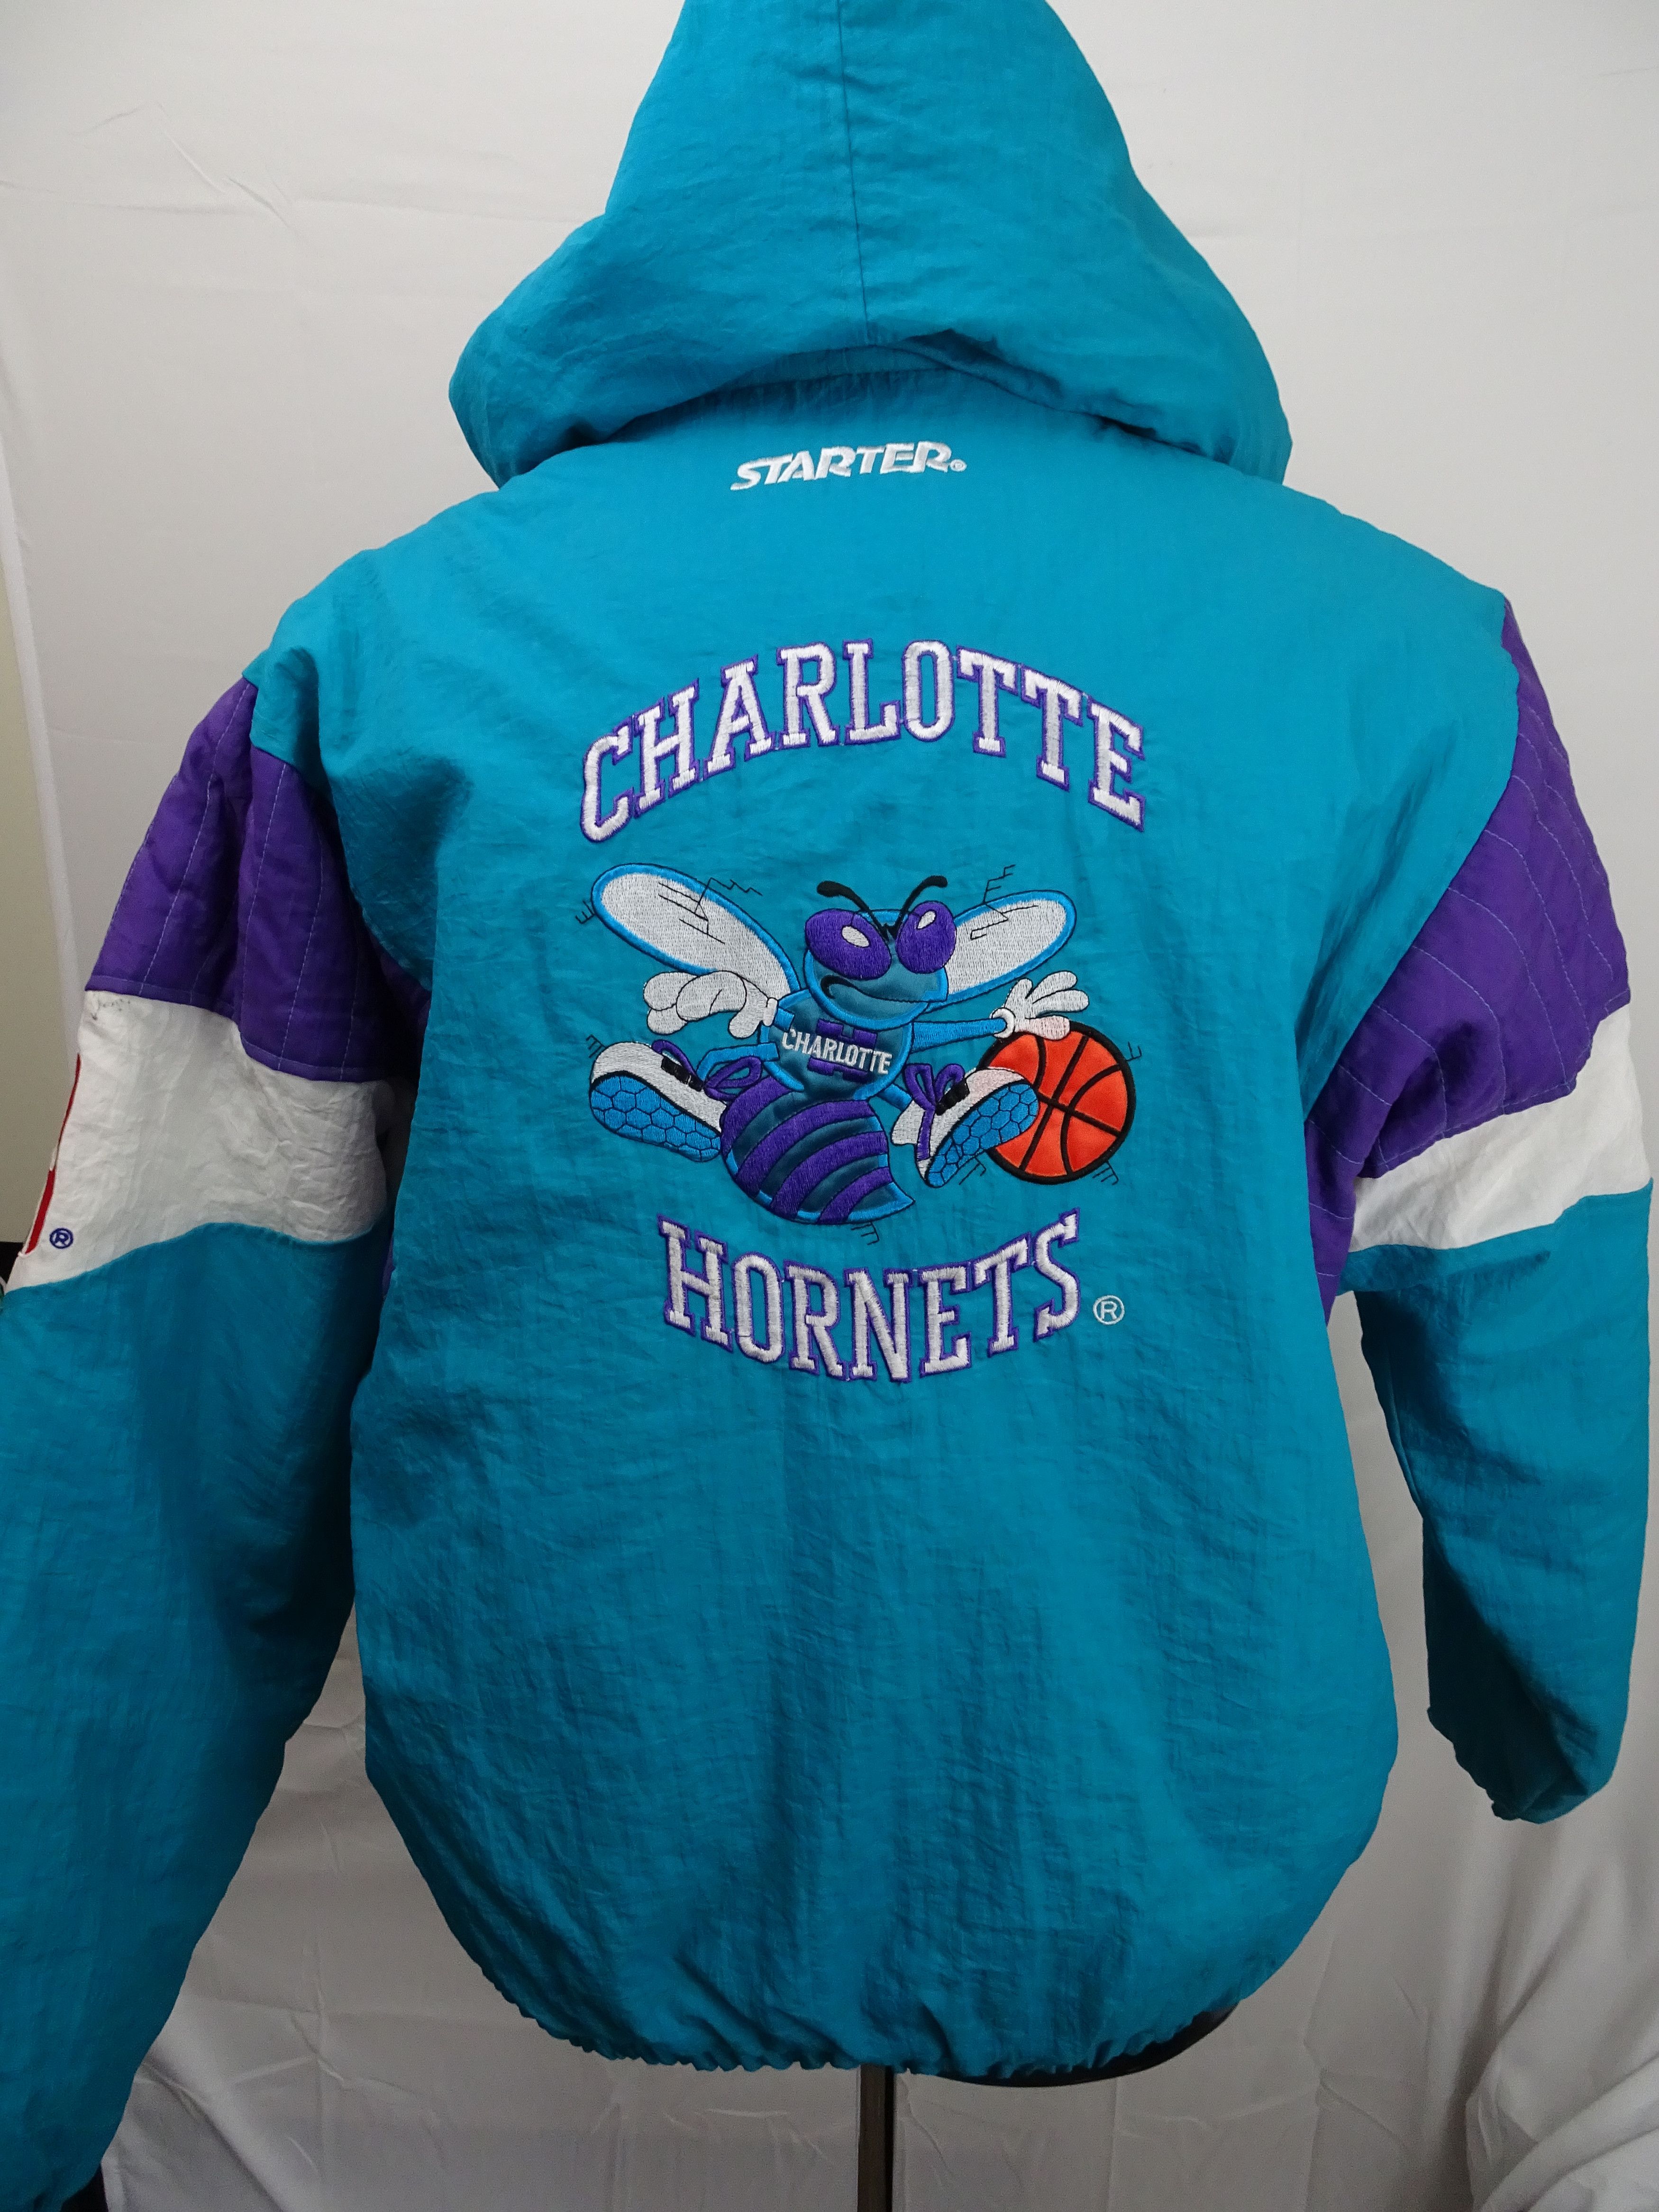 Vintage 90's Starter NBA Charlotte Hornets Jacket - Size Large/XL